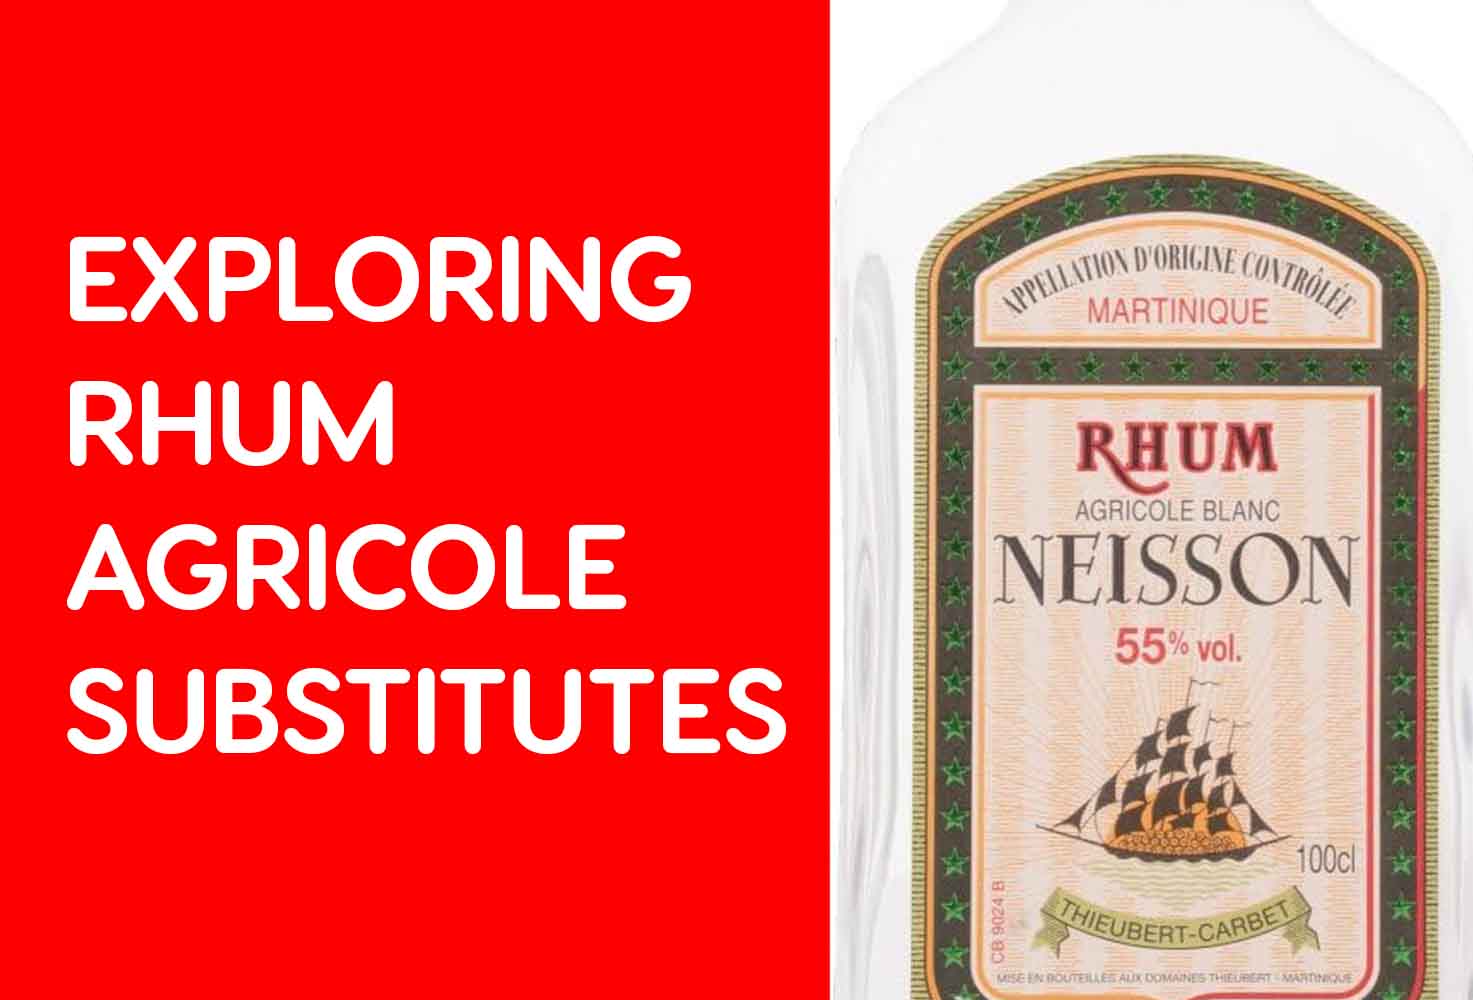 Exploring Rhum Agricole Substitutes